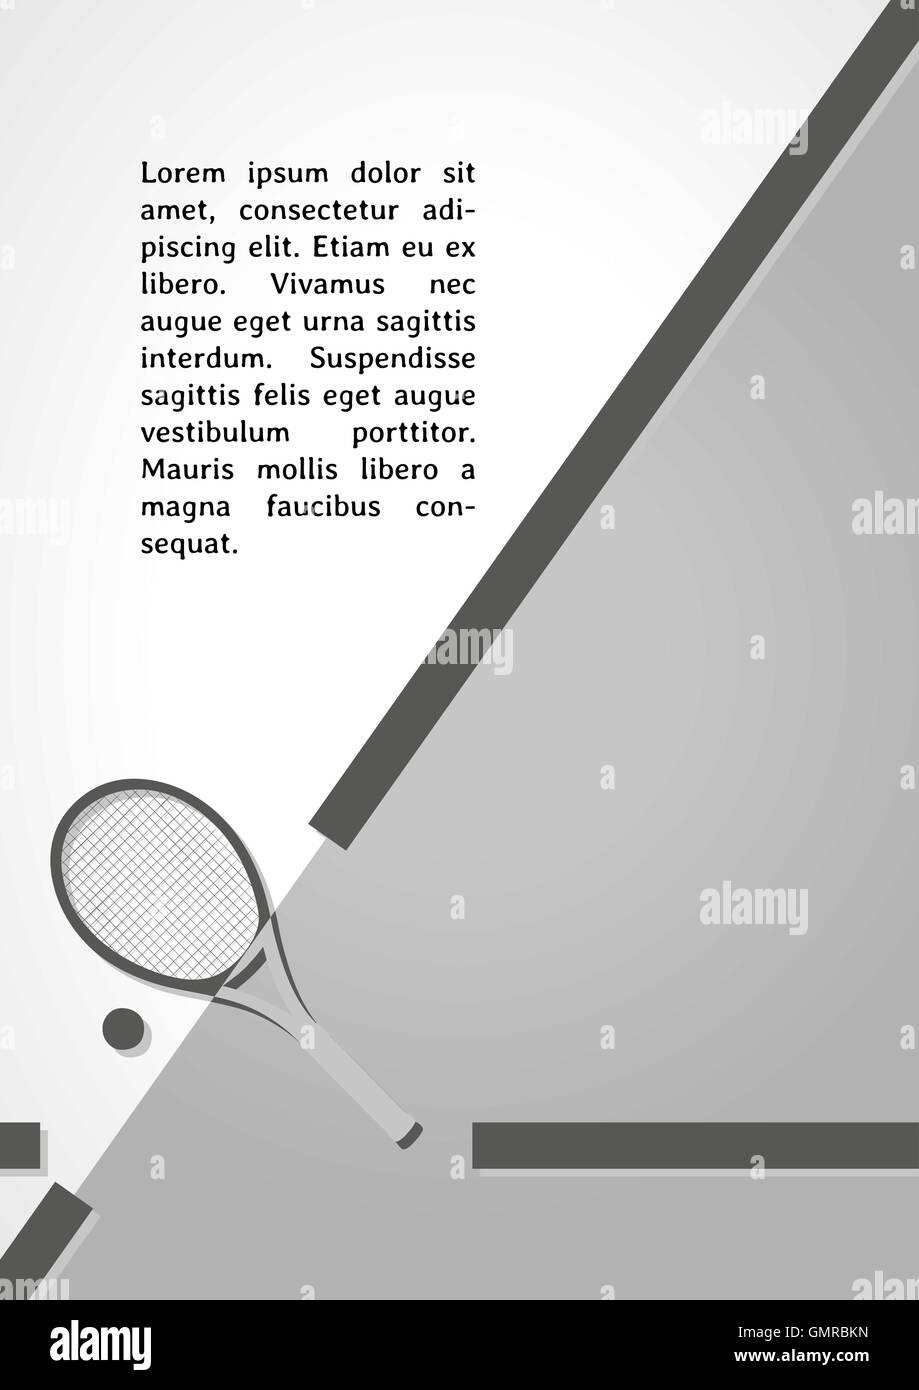 Raquette de tennis noir symbole des infographies Illustration de Vecteur